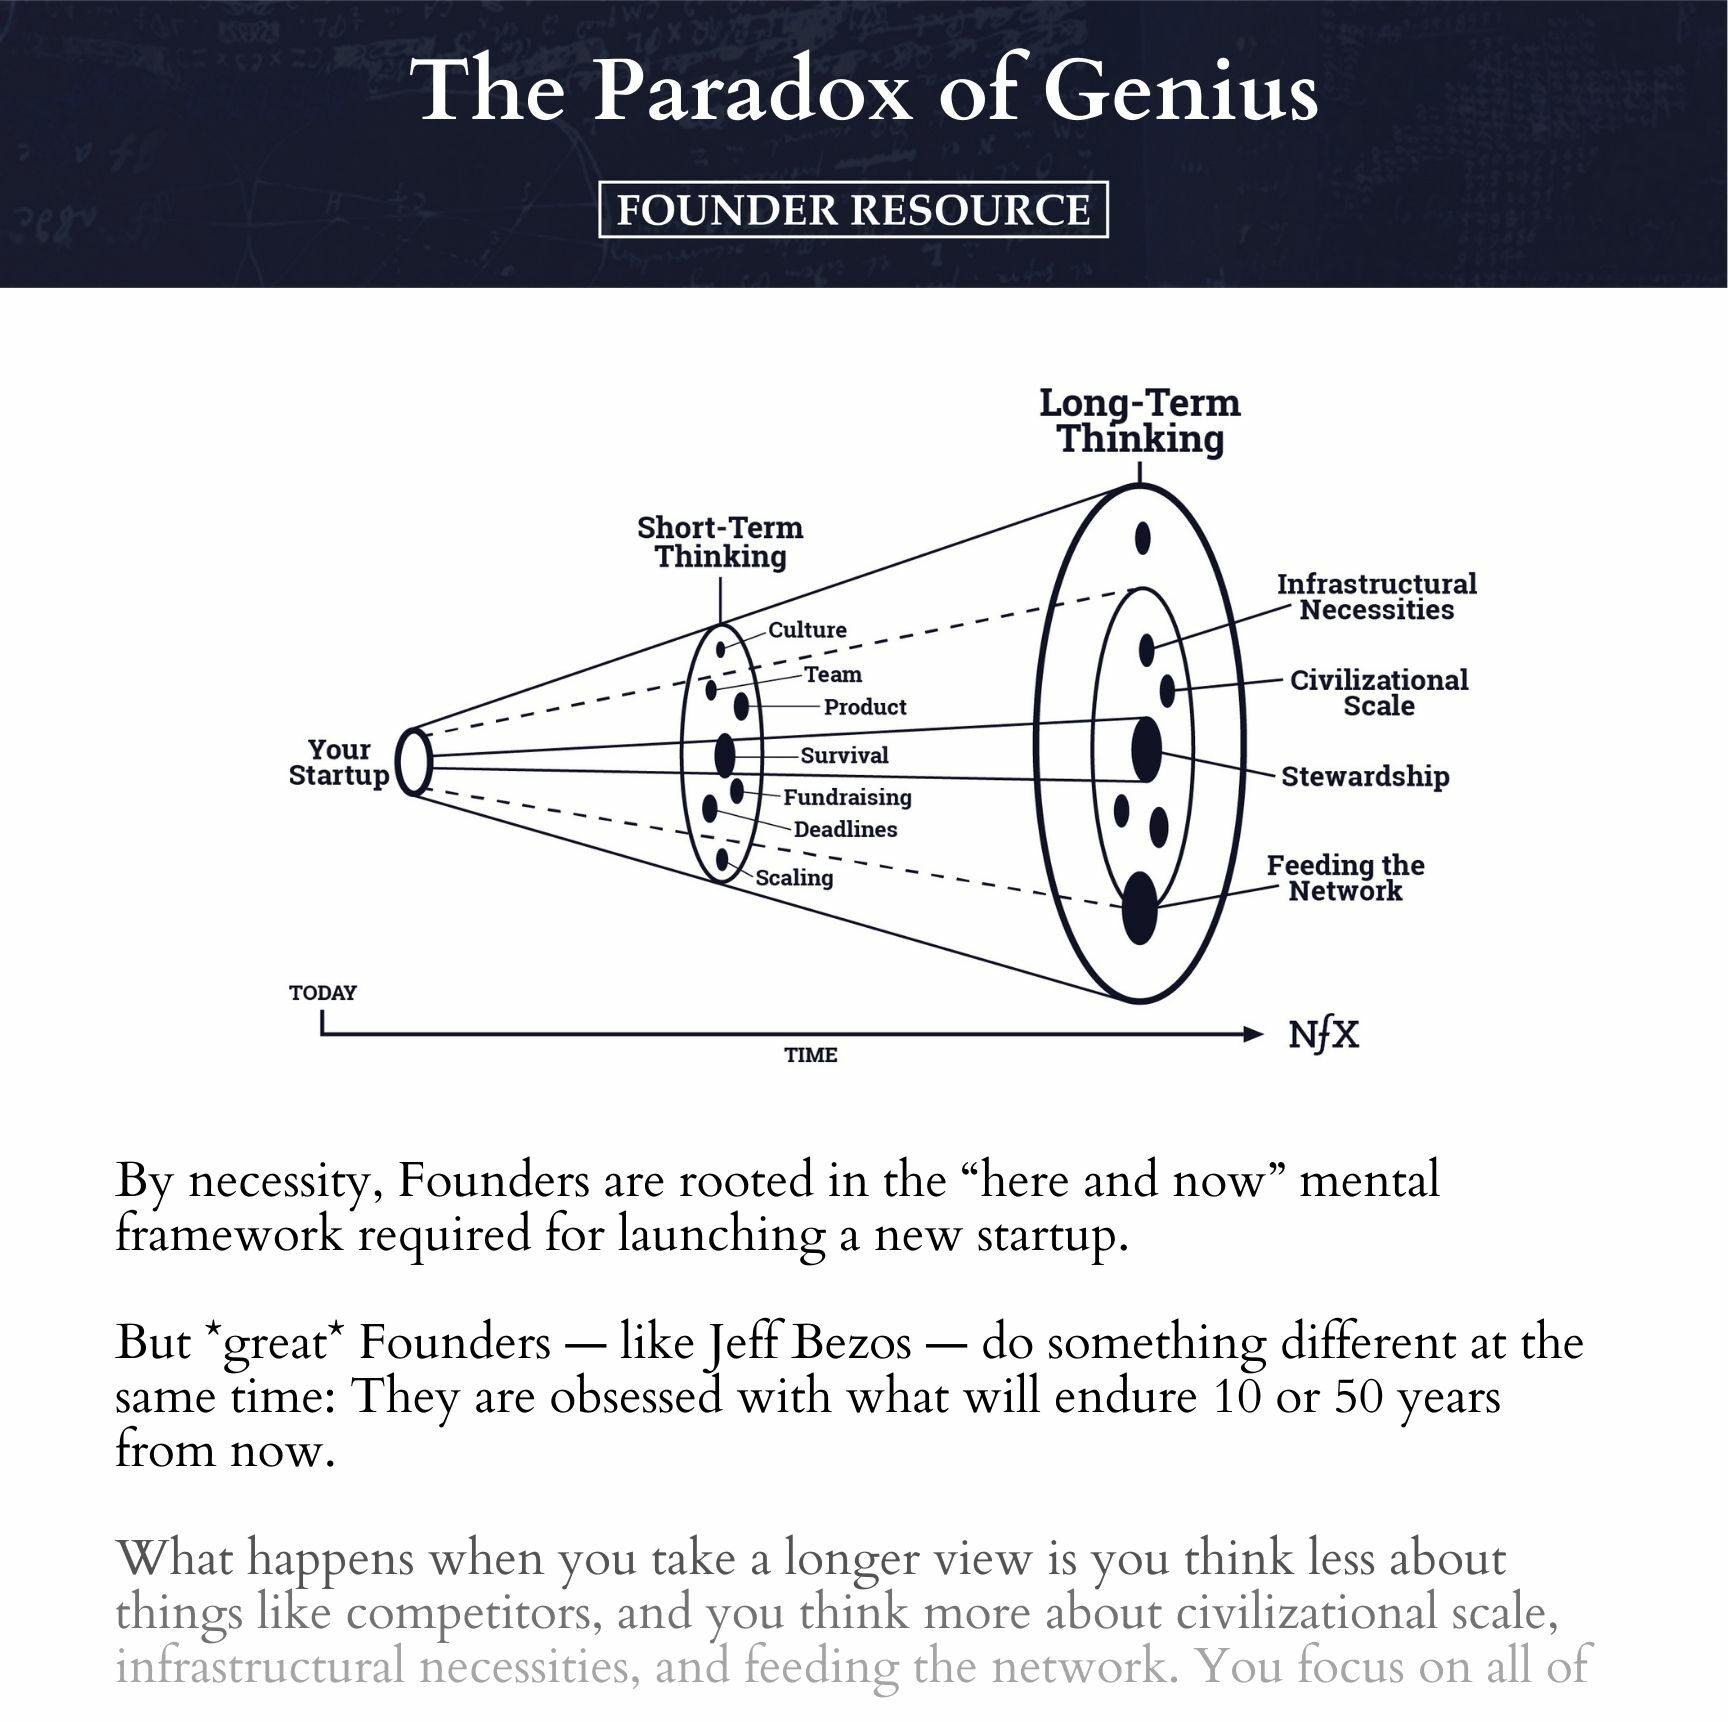 The Paradox of Genius